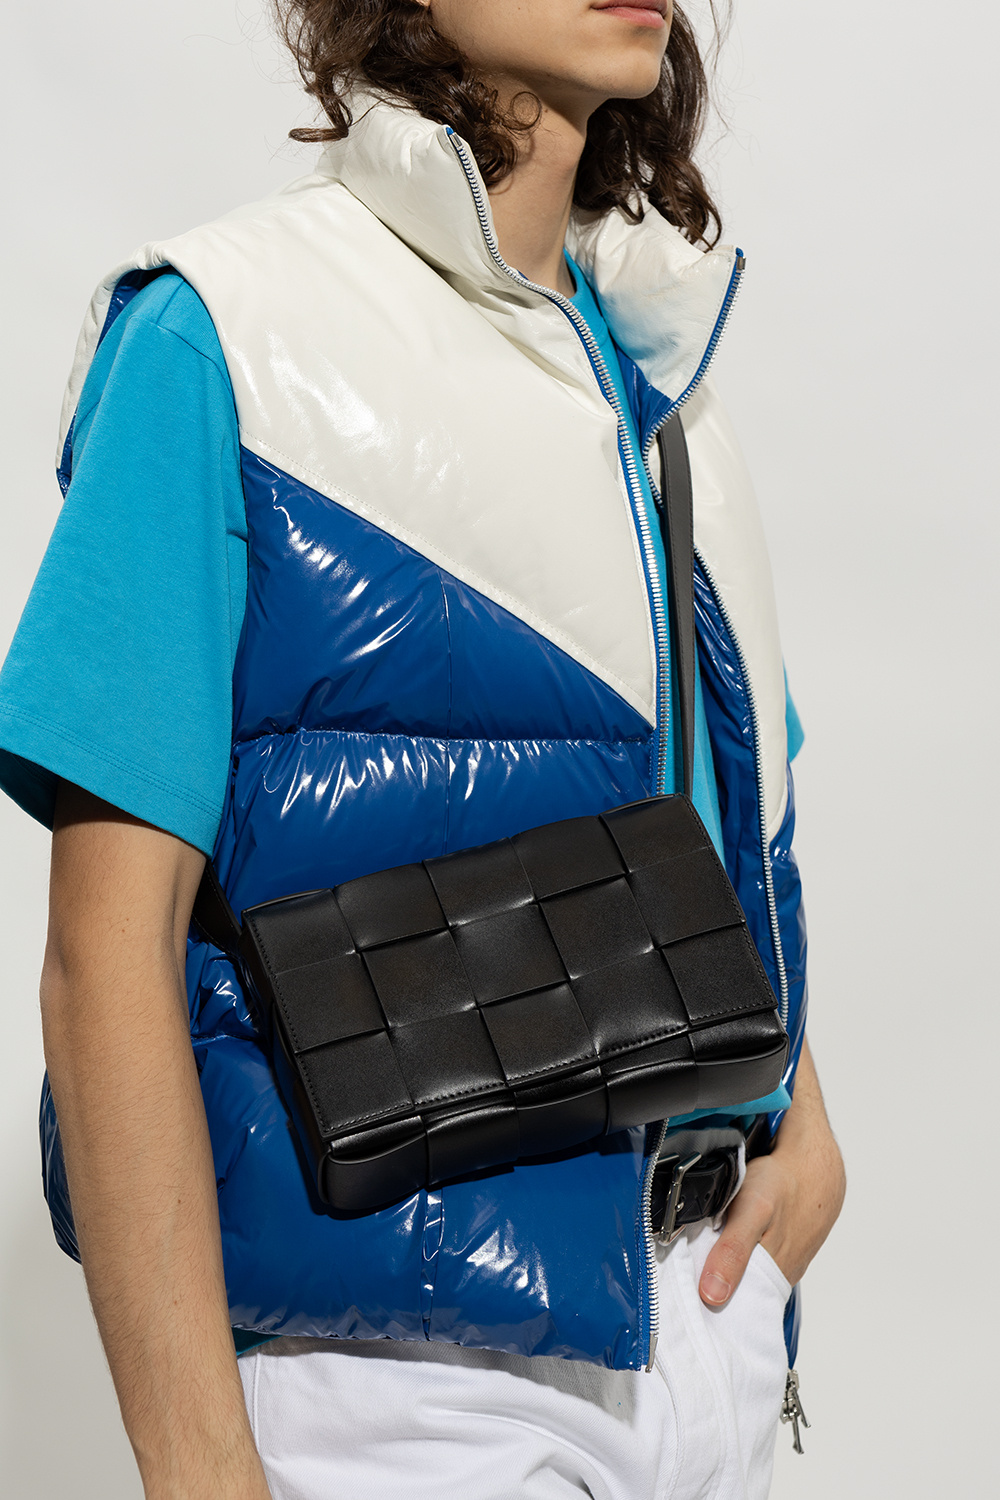 bottega High Veneta ‘Cassette Medium’ shoulder bag